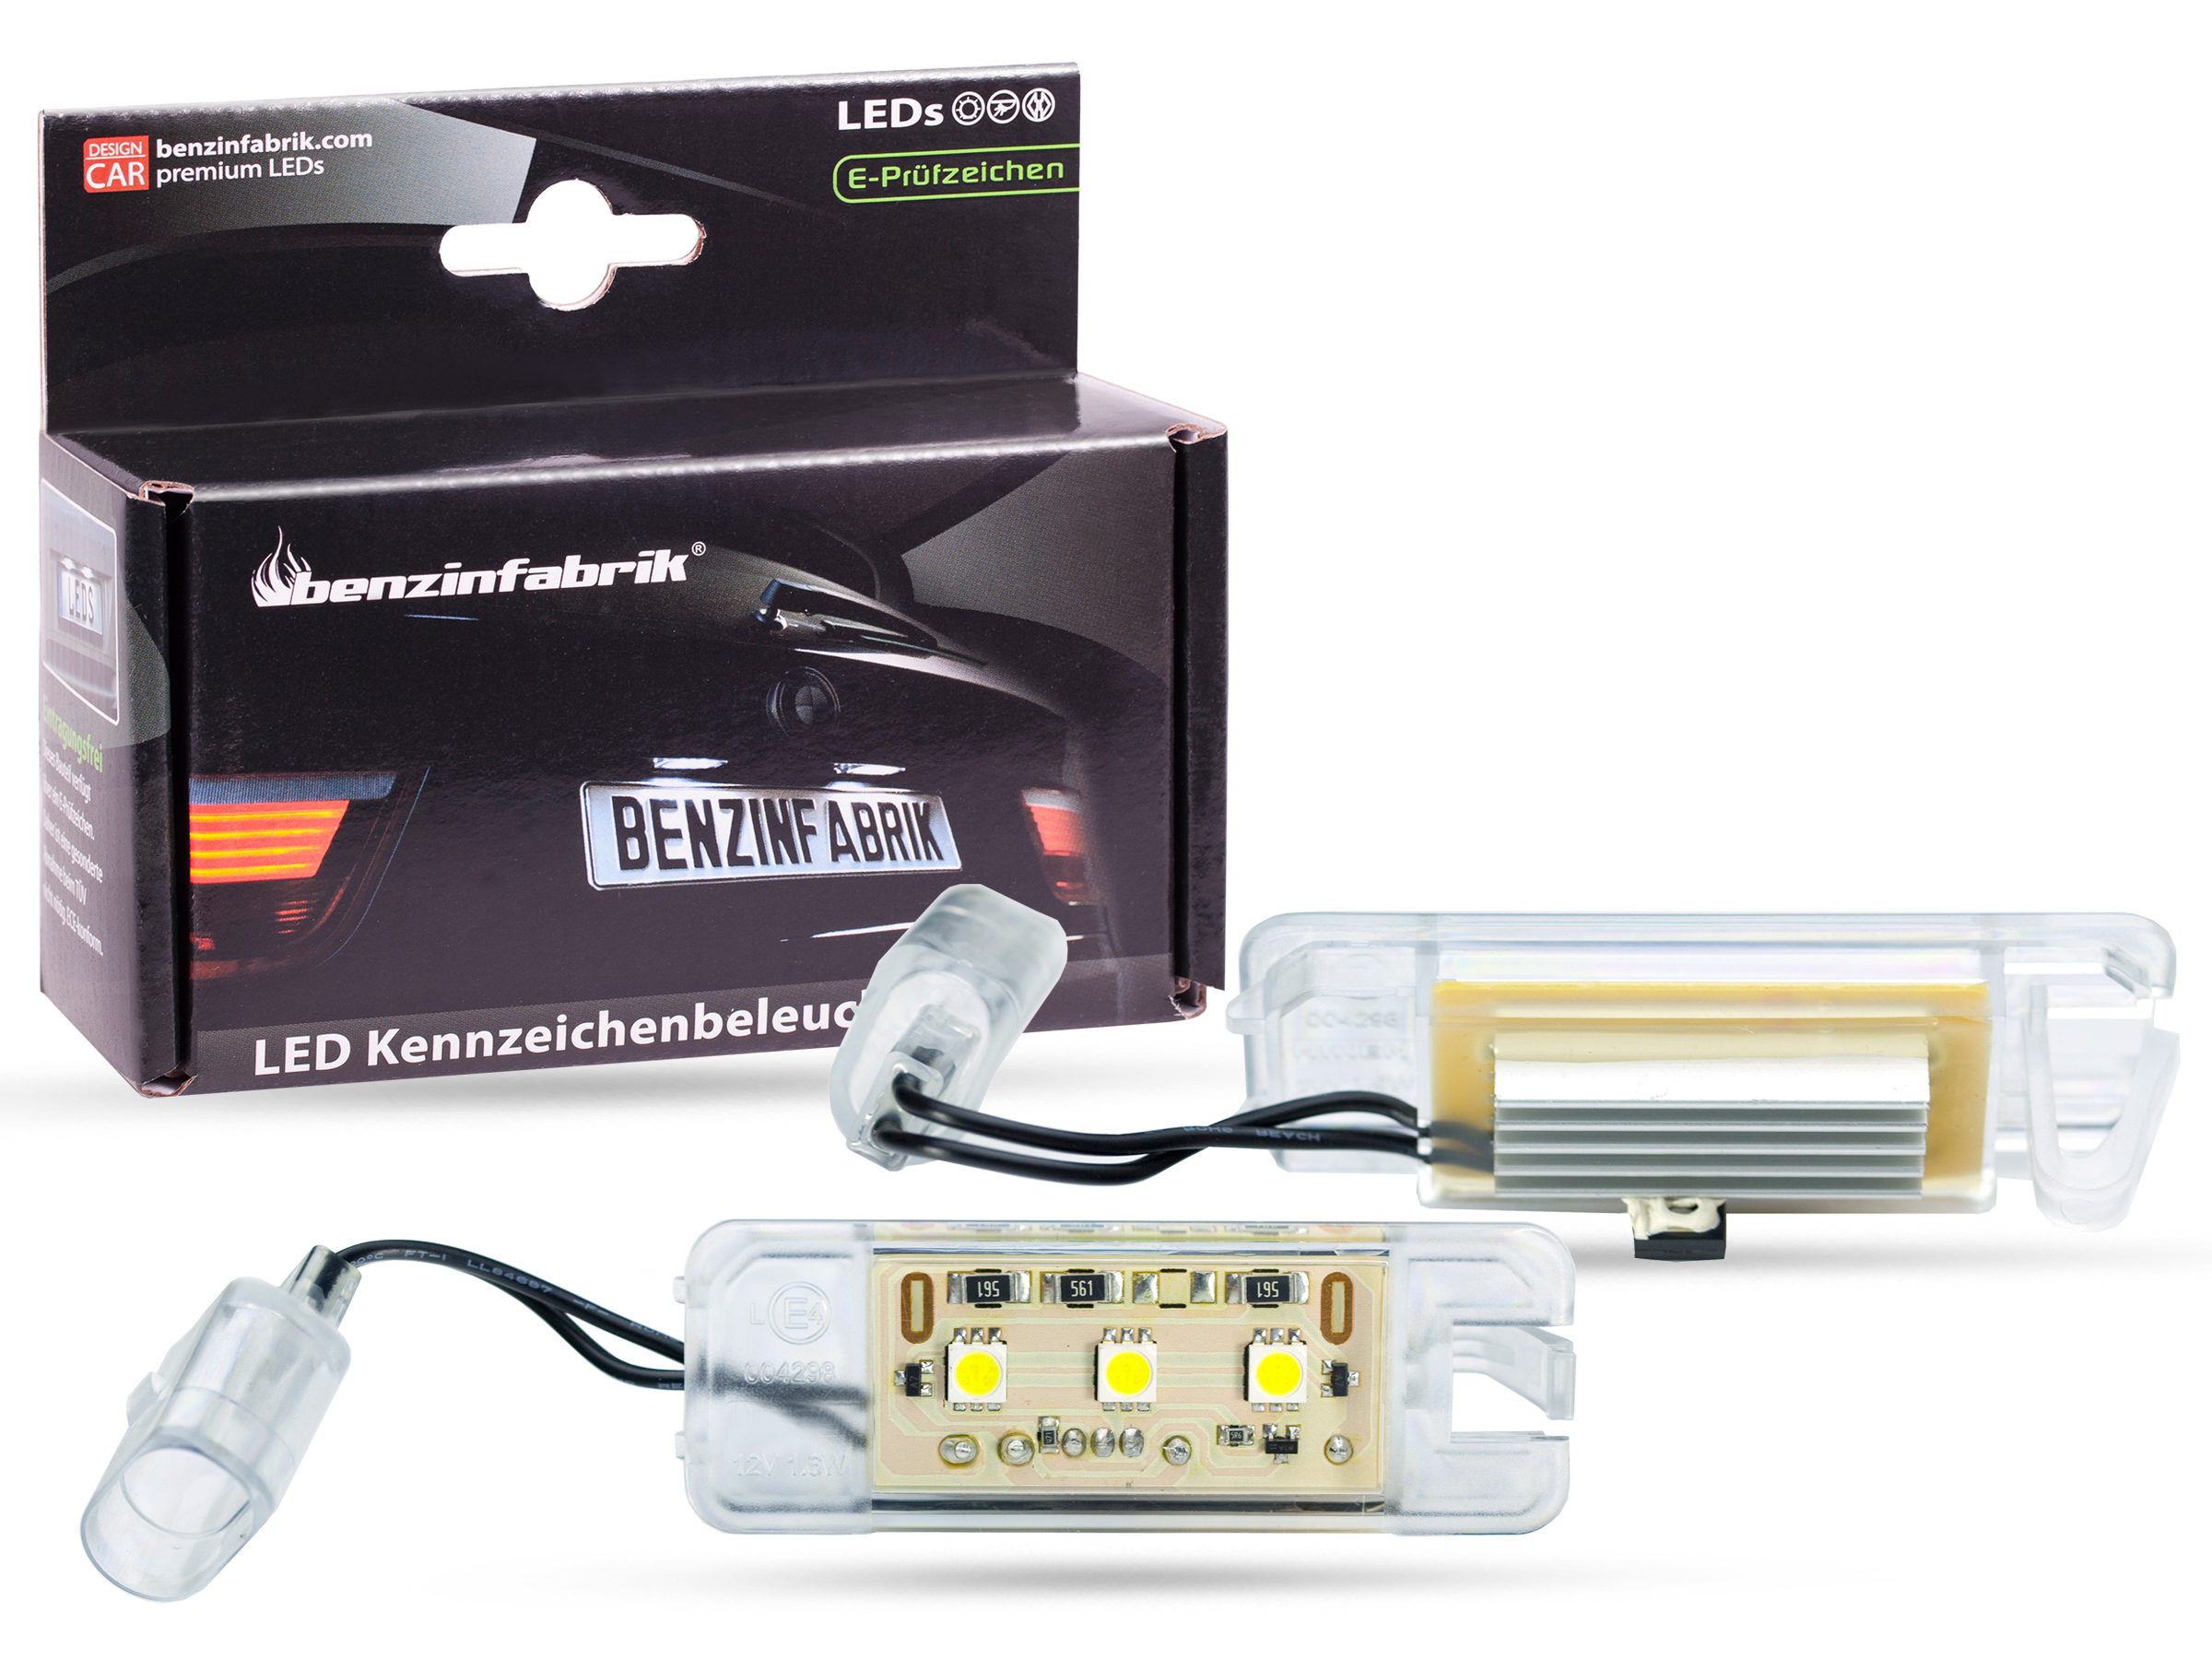 LED Kennzeichenbeleuchtung Module VW Golf 7 VII, mit E-Prüfzeichen, LED  Kennzeichenbeleuchtung für VW, LED Kennzeichenbeleuchtung